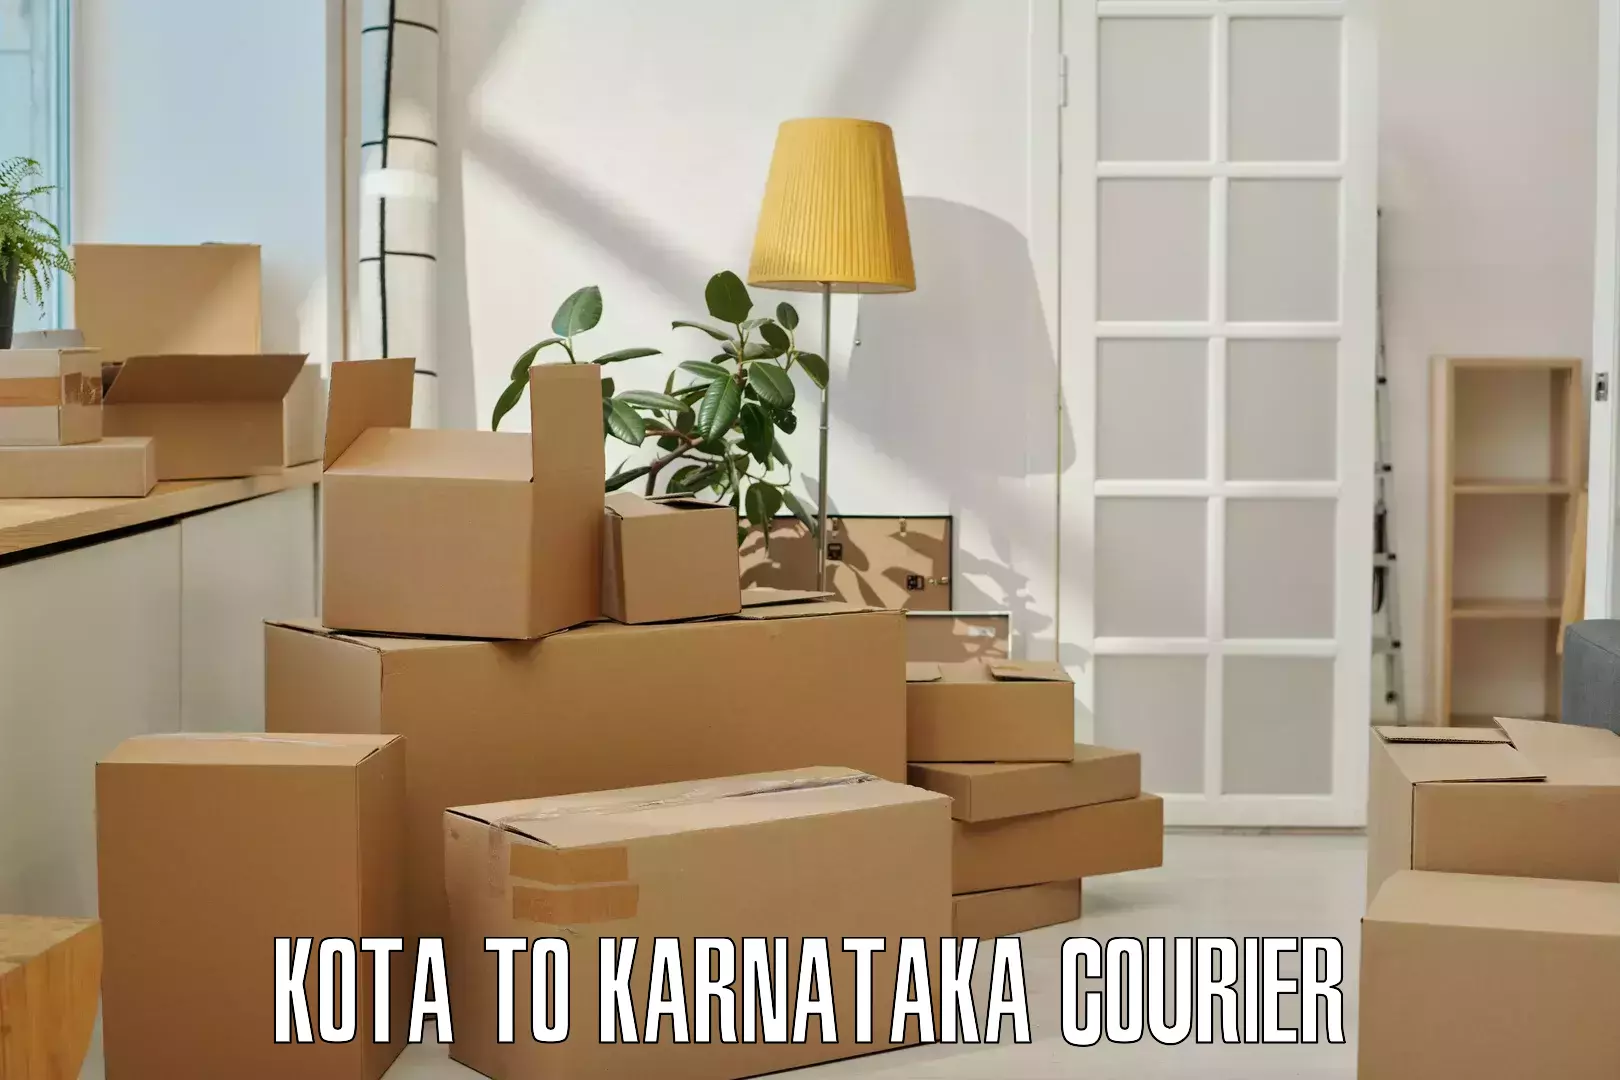 Cargo delivery service in Kota to Banavara